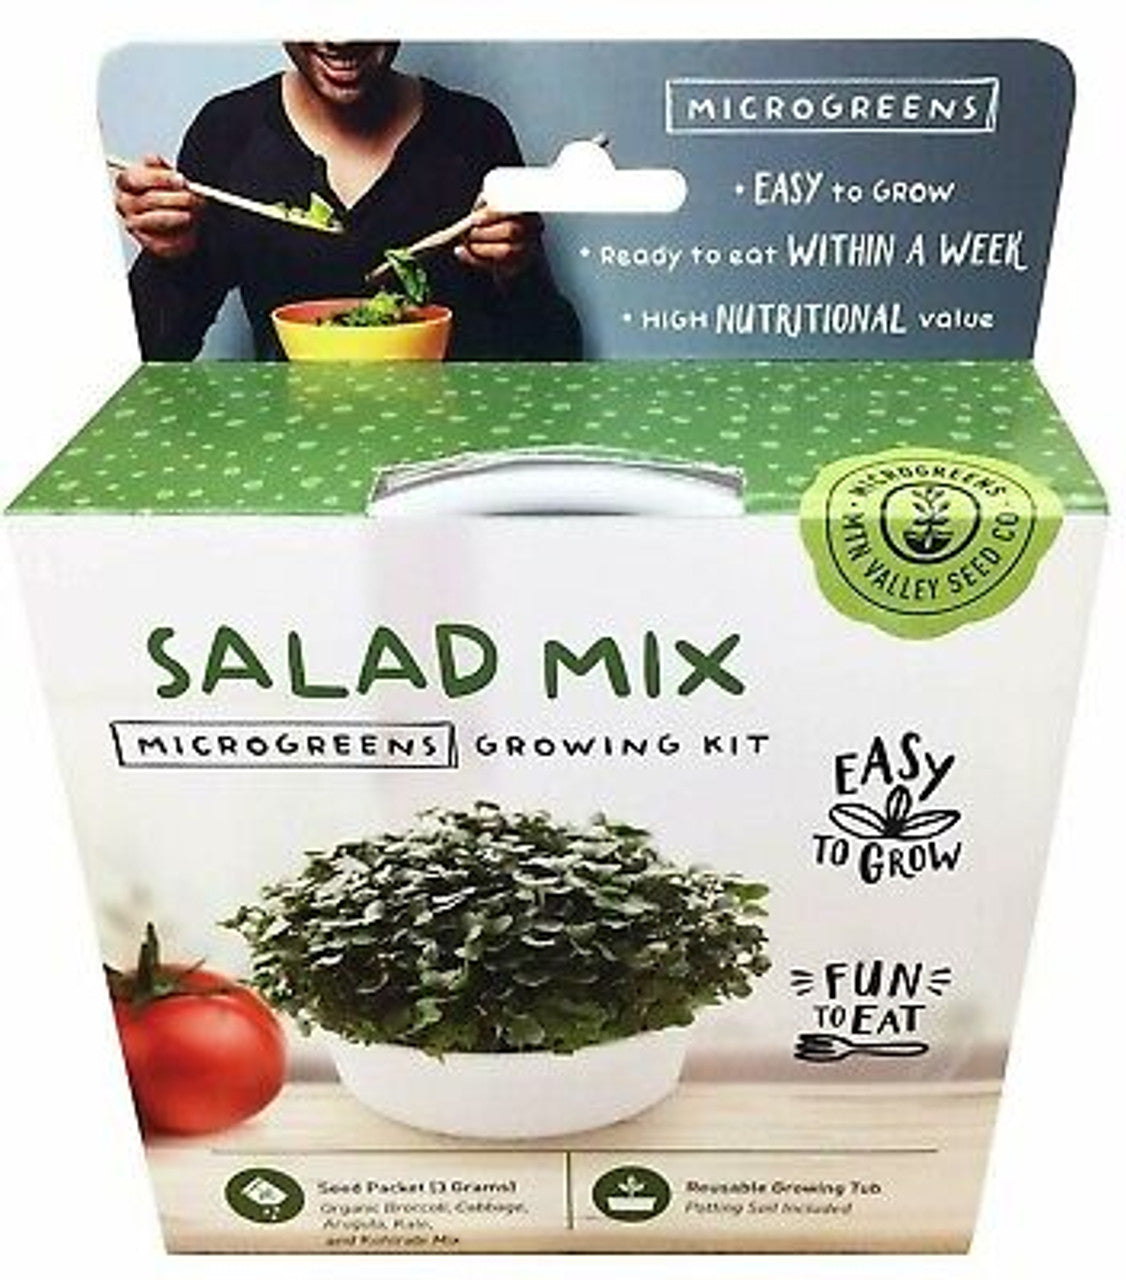 Salad Mix Microgreens Growing Kit